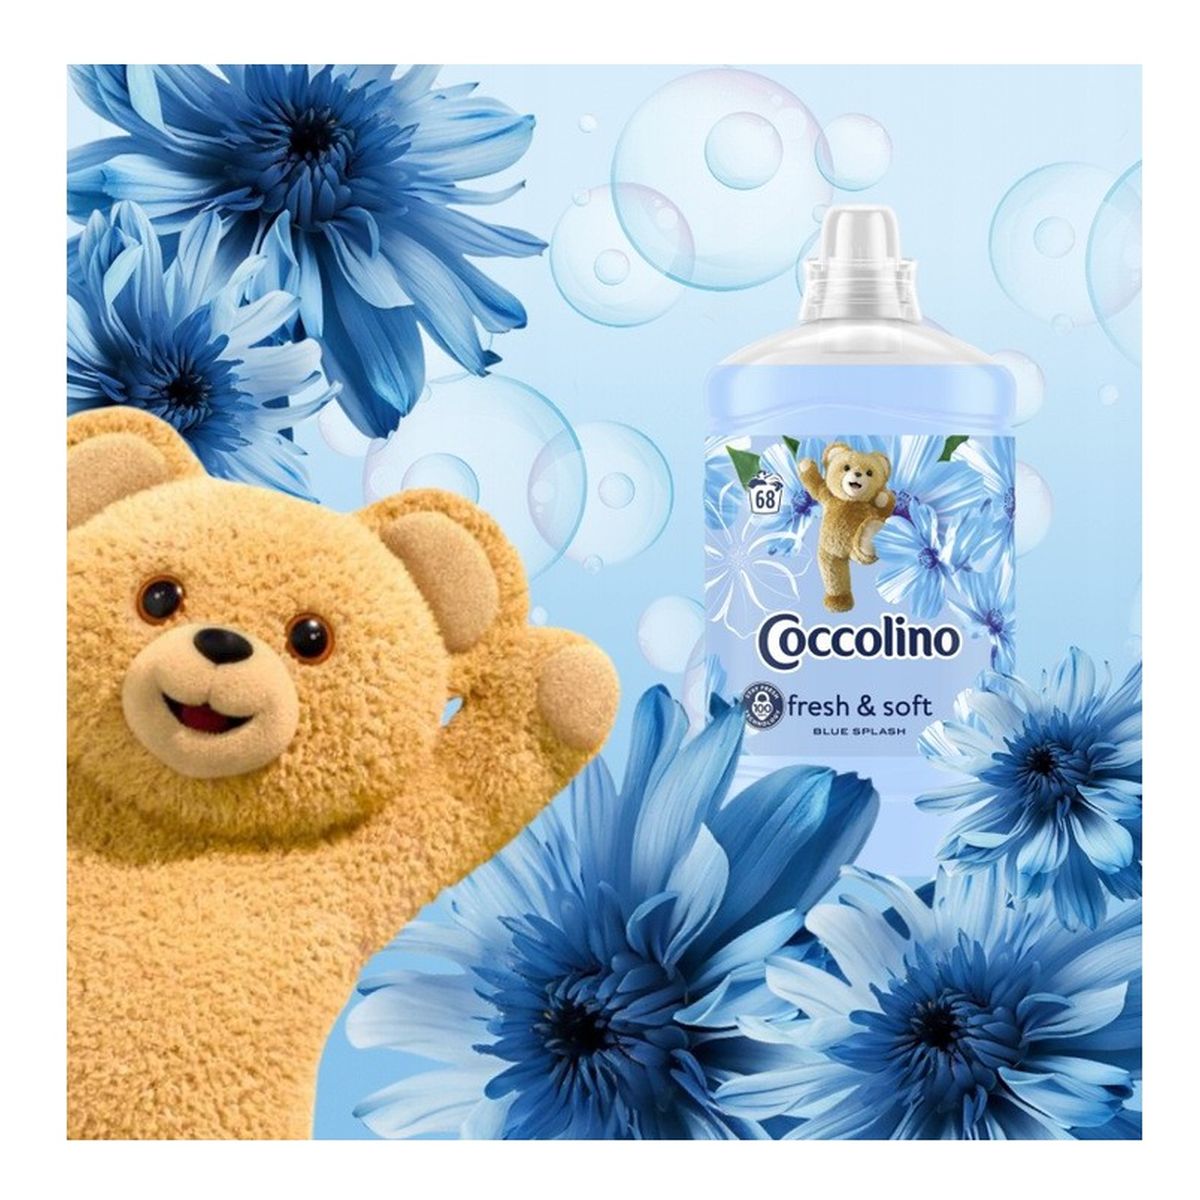 Coccolino Fresh & Soft Płyn do Płukania Tkanin Blue Splash 68 Prań 1700ml